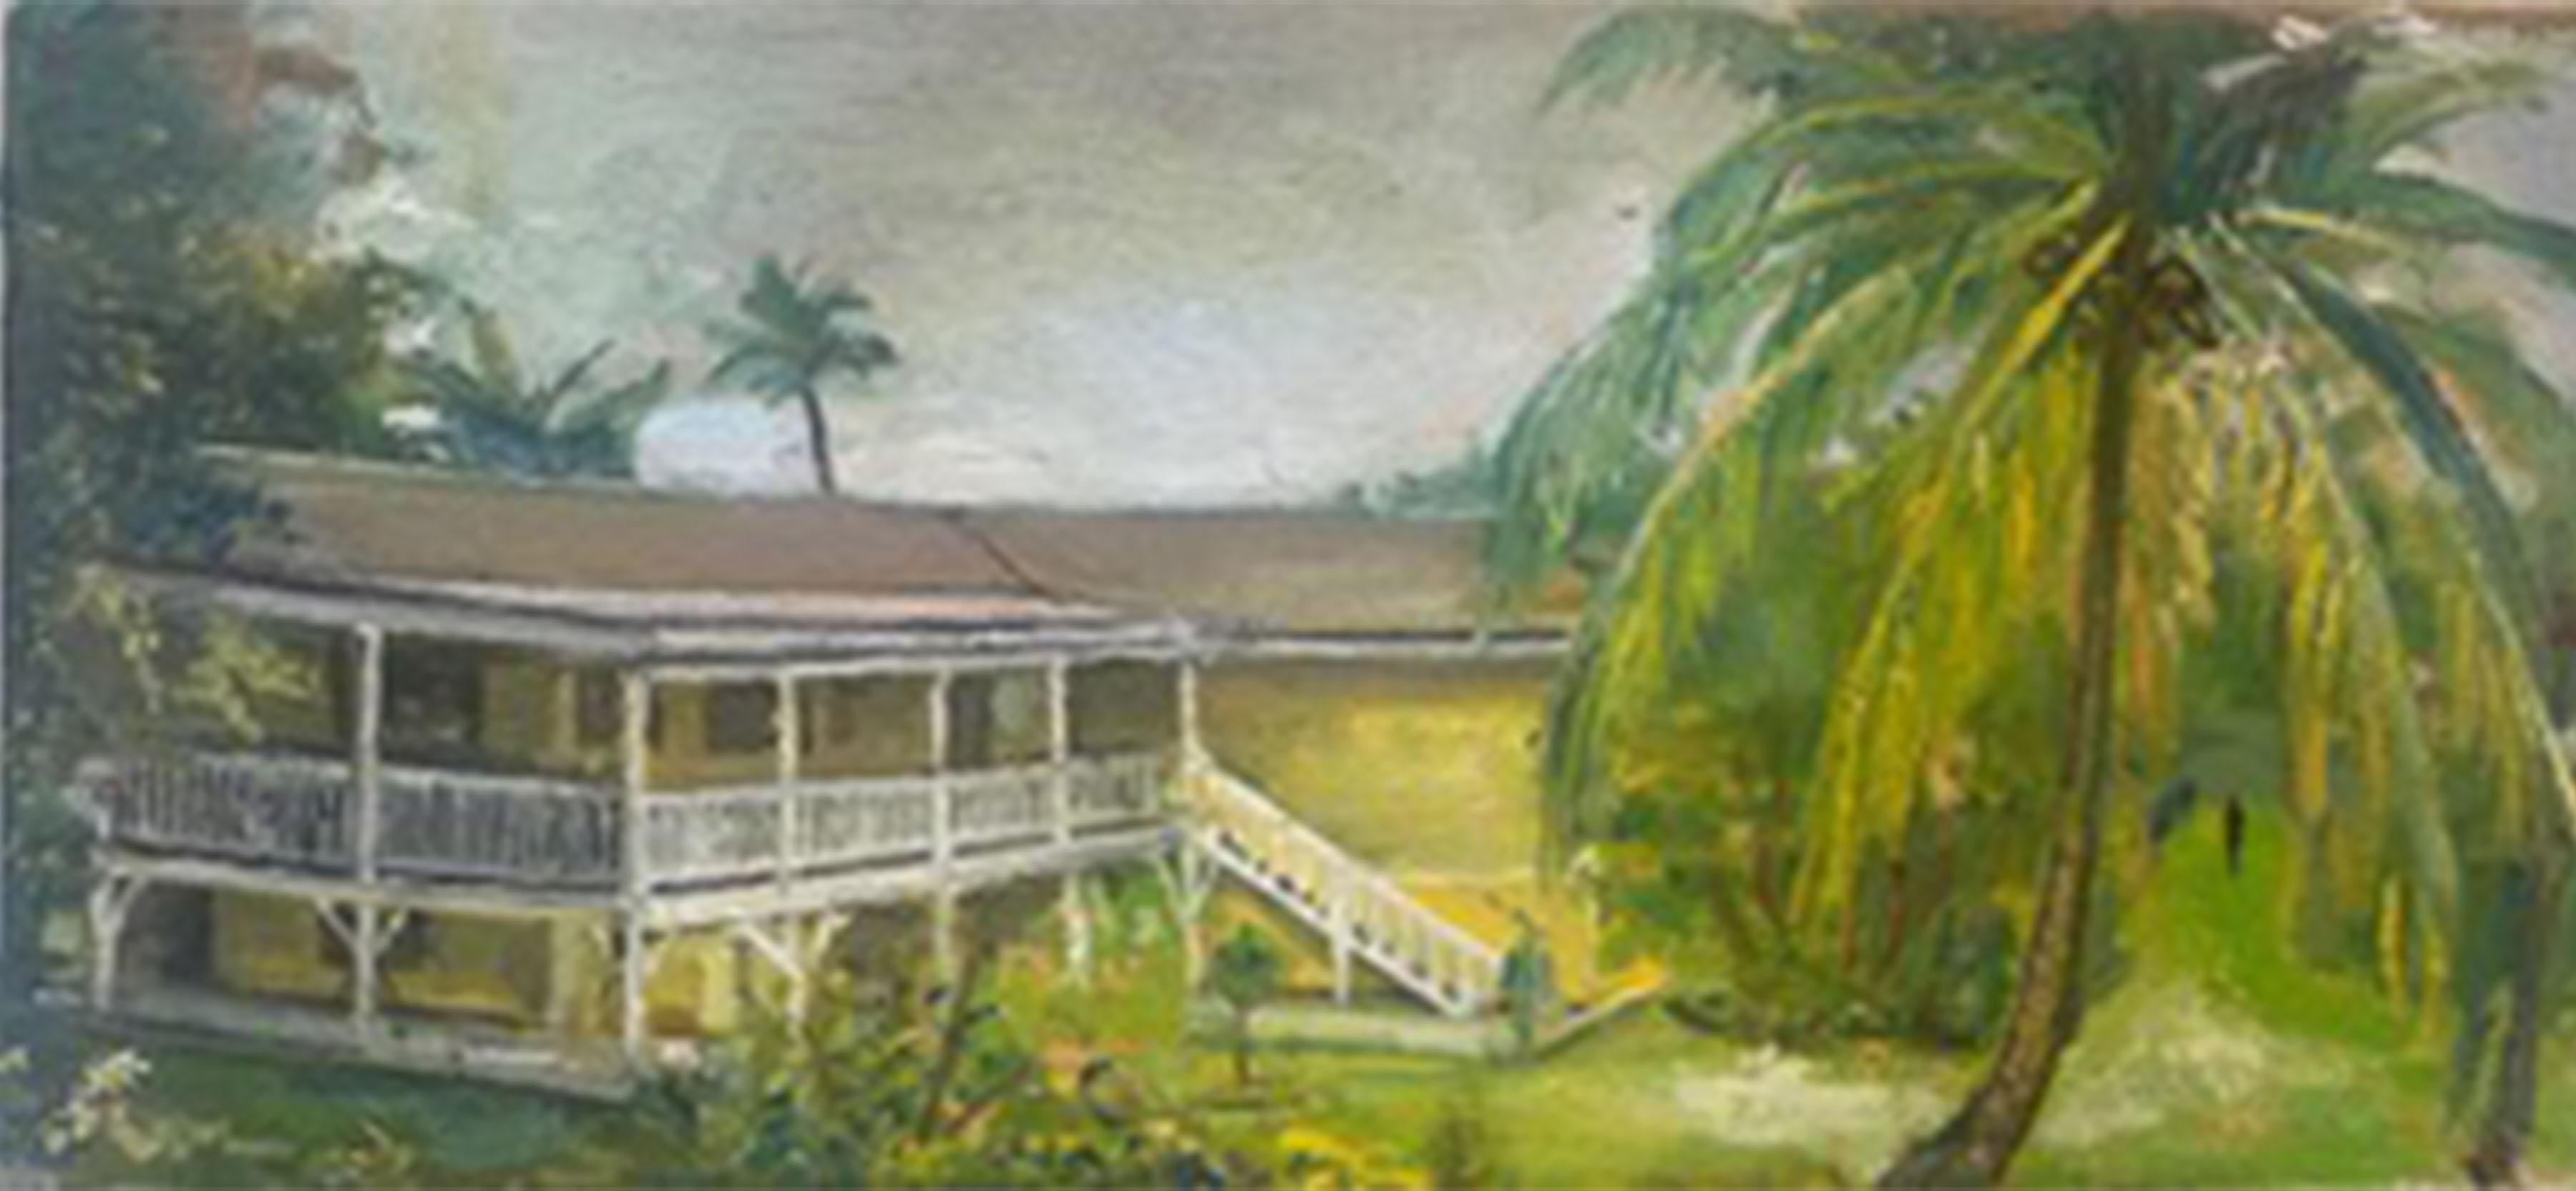 Landscape Painting Don Perlis - Maison de plage d'île